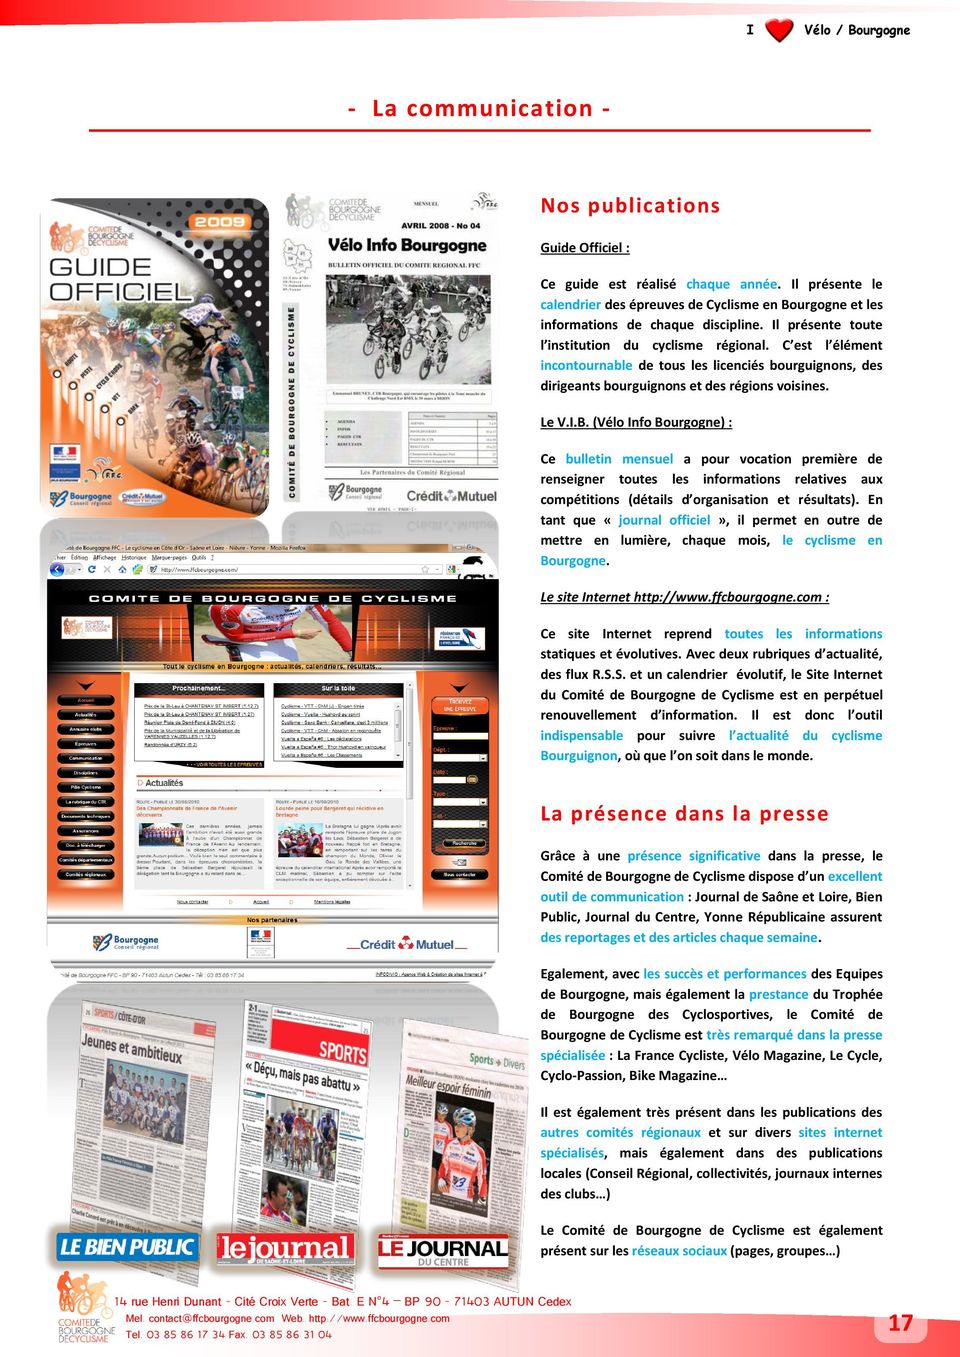 (Vélo Info Bourgogne) : Ce bulletin mensuel a pour vocation première de renseigner toutes les informations relatives aux compétitions (détails d organisation et résultats).